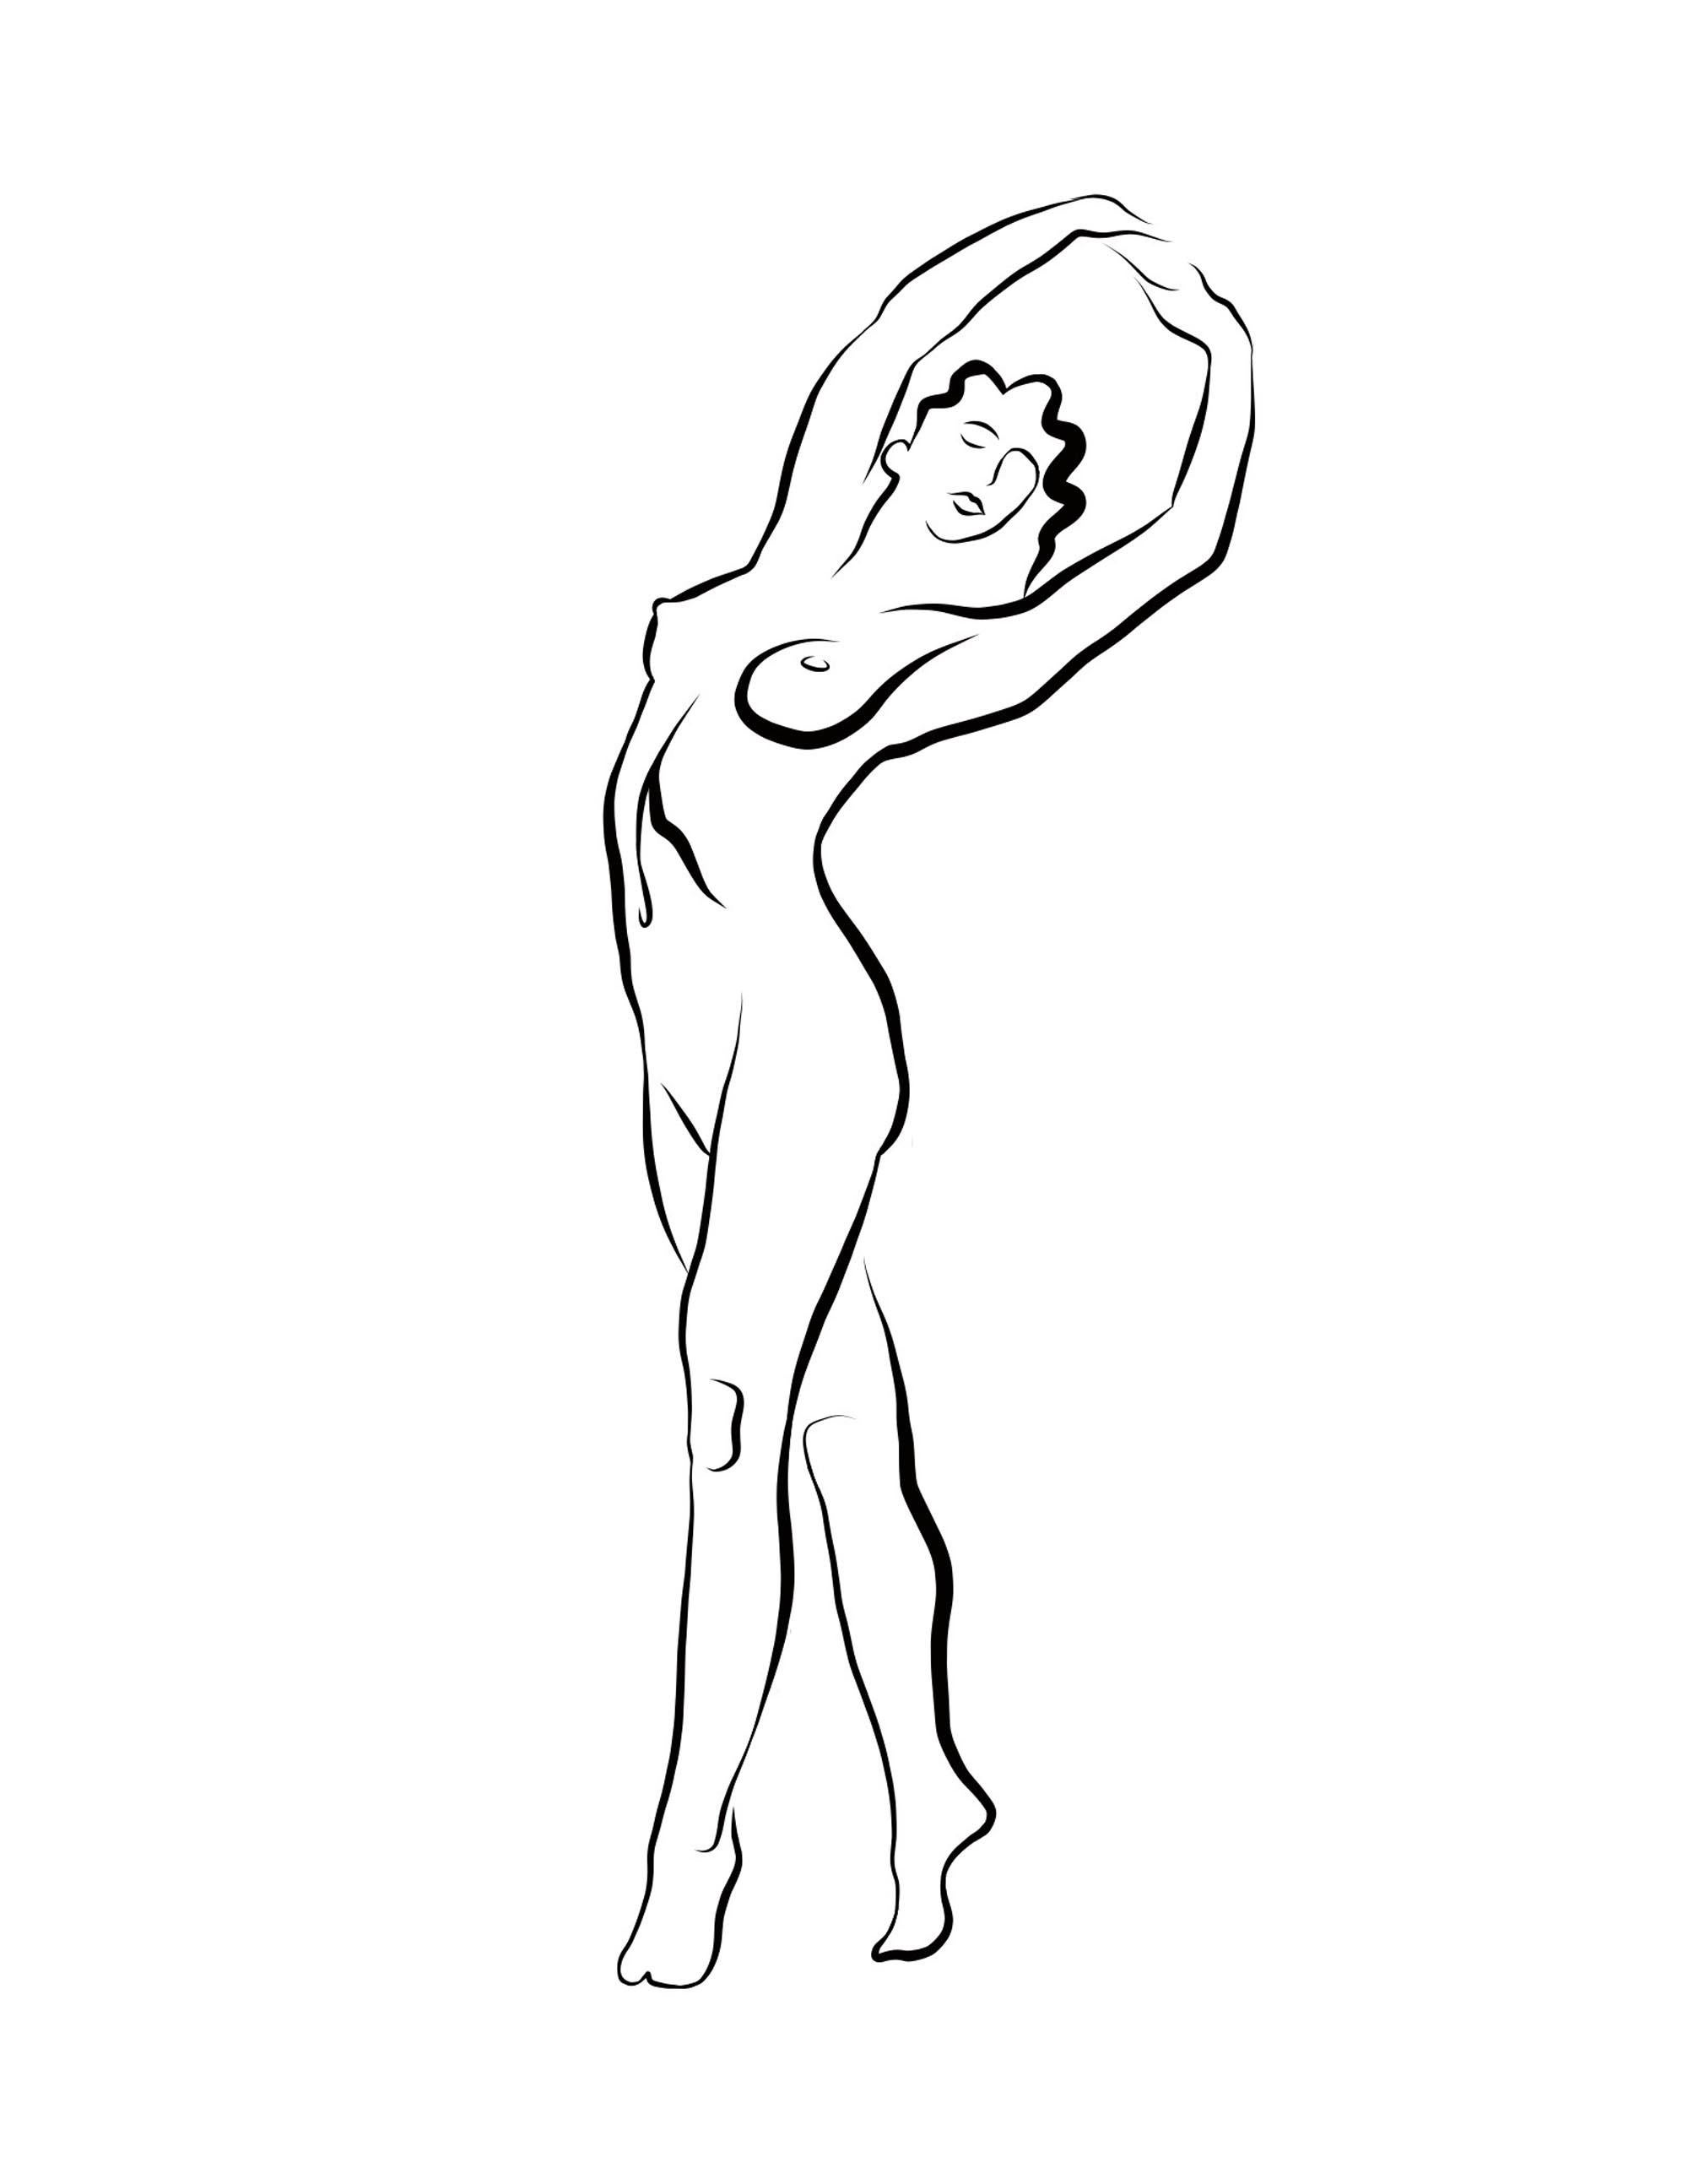 Michael Binkley Nude Print - Haiku #56 - Digital Vector Drawing Standing Female Nude Woman Figure Arms Raised